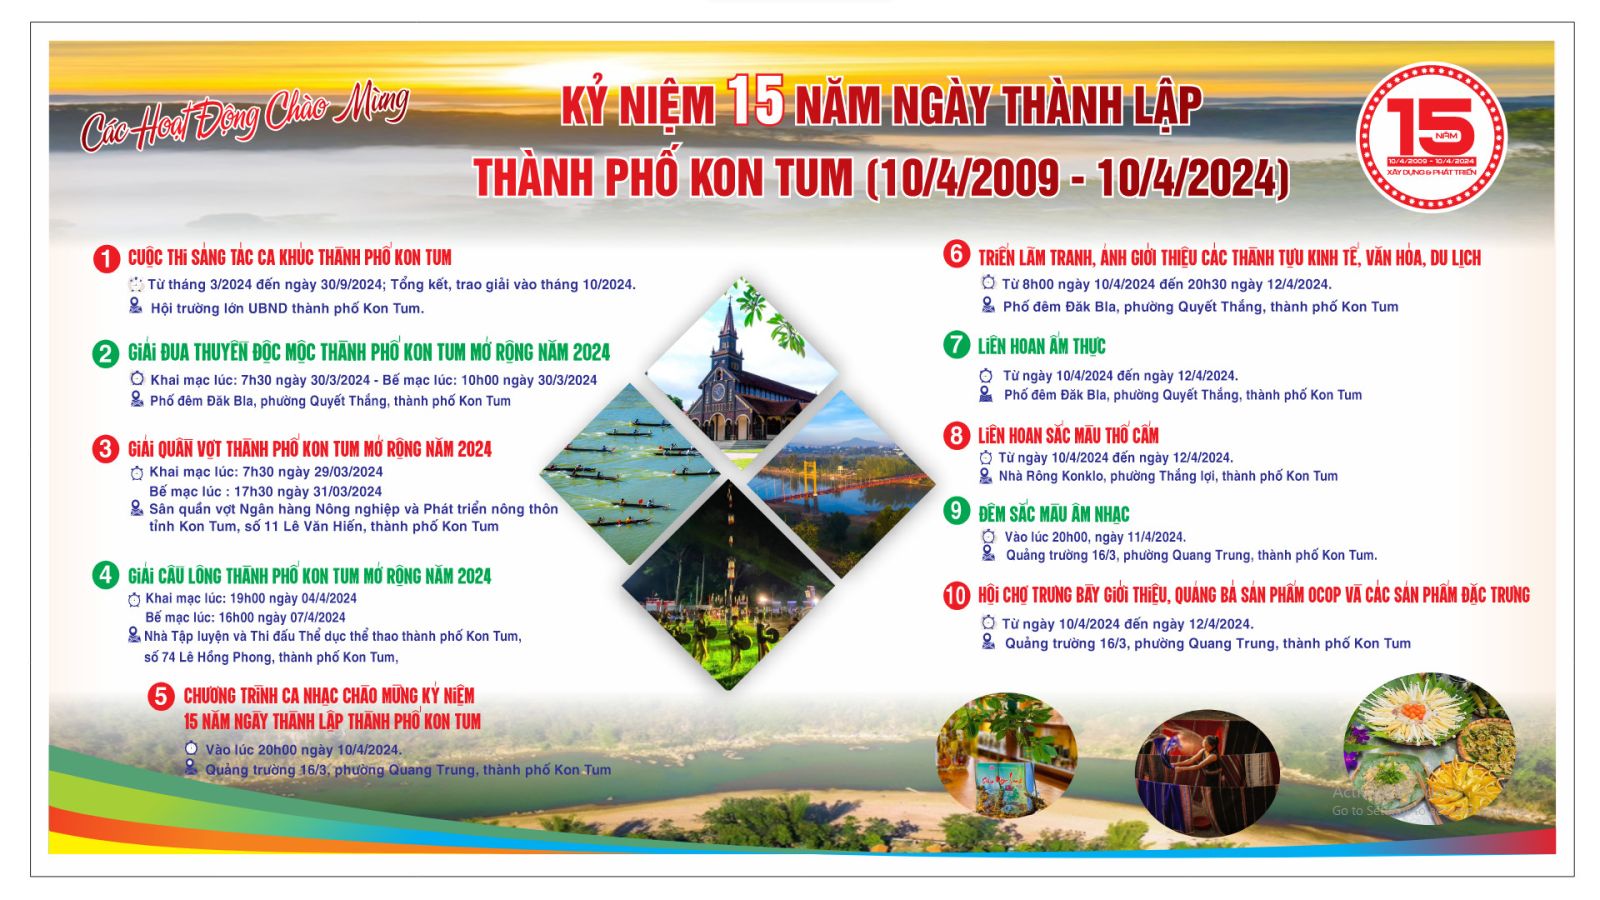 Các hoạt động chào mừng kỷ niệm 15 năm Ngày thành lập thành phố Kon Tum